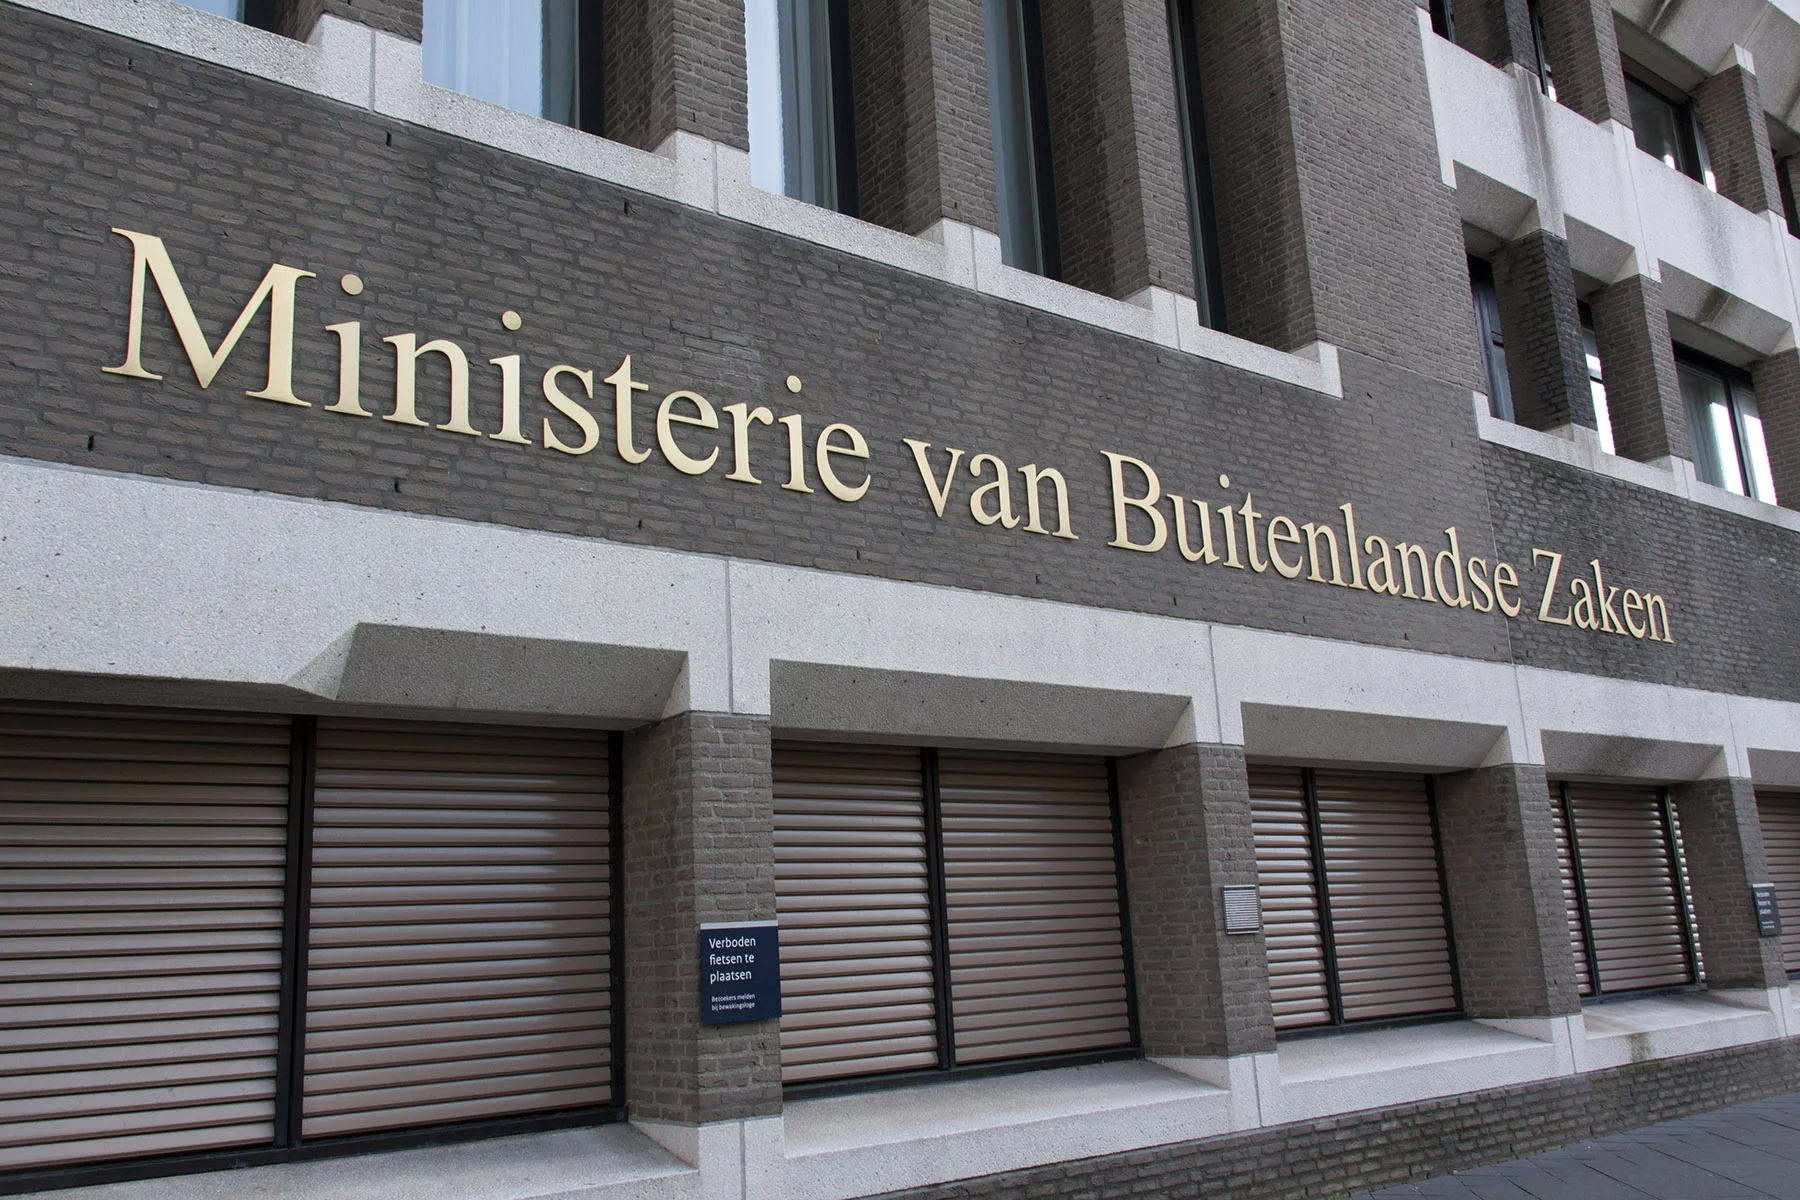 BZK, Dutch Ministry of Internal Affairs